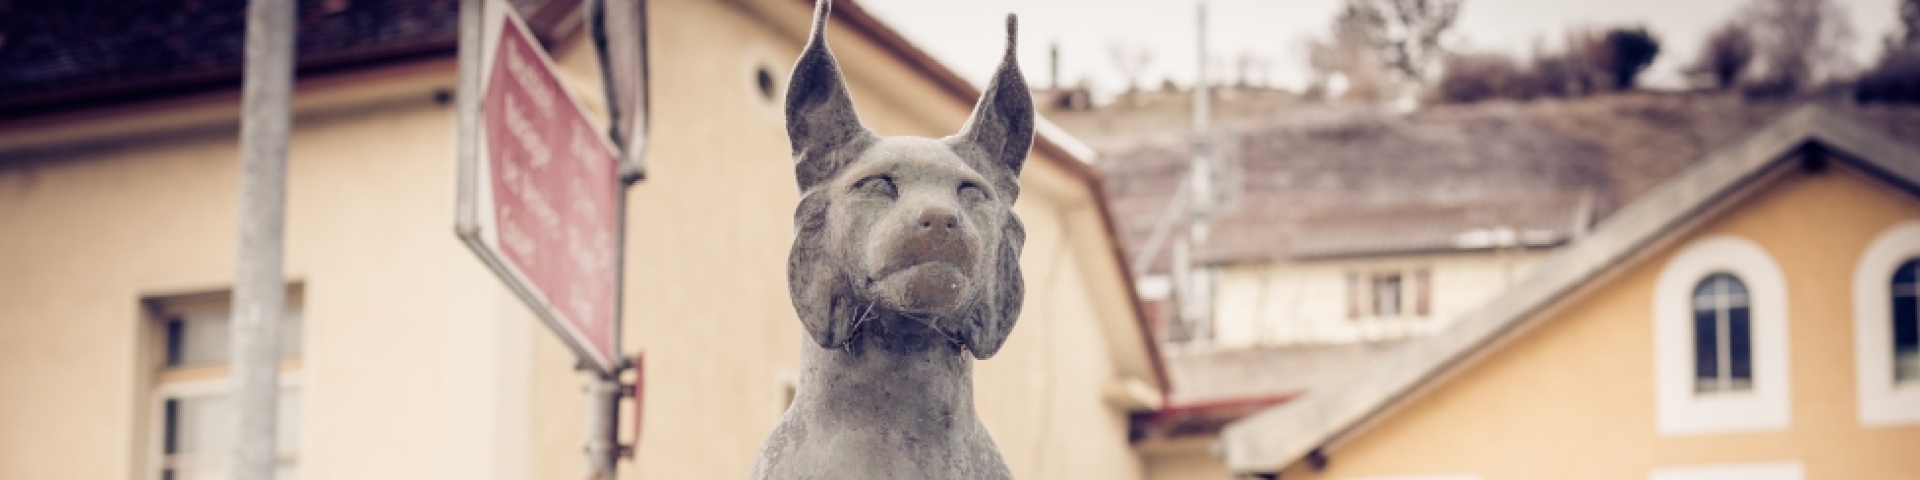 La culture au Val-de-Travers : Lynx, bronze de Louis Ducommun